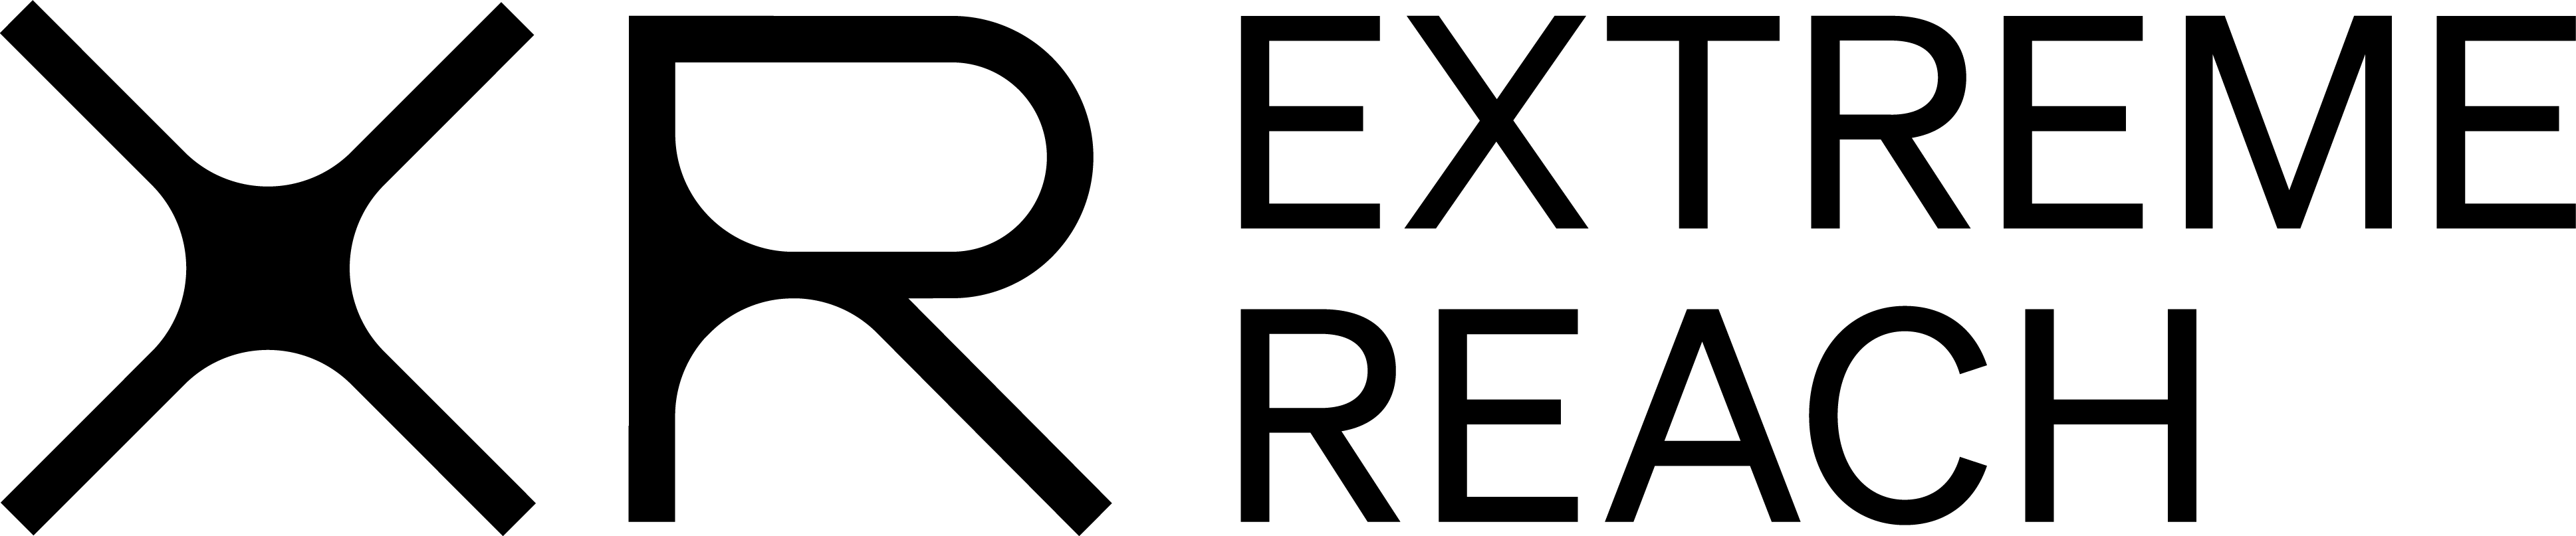 XR Extreme Reach